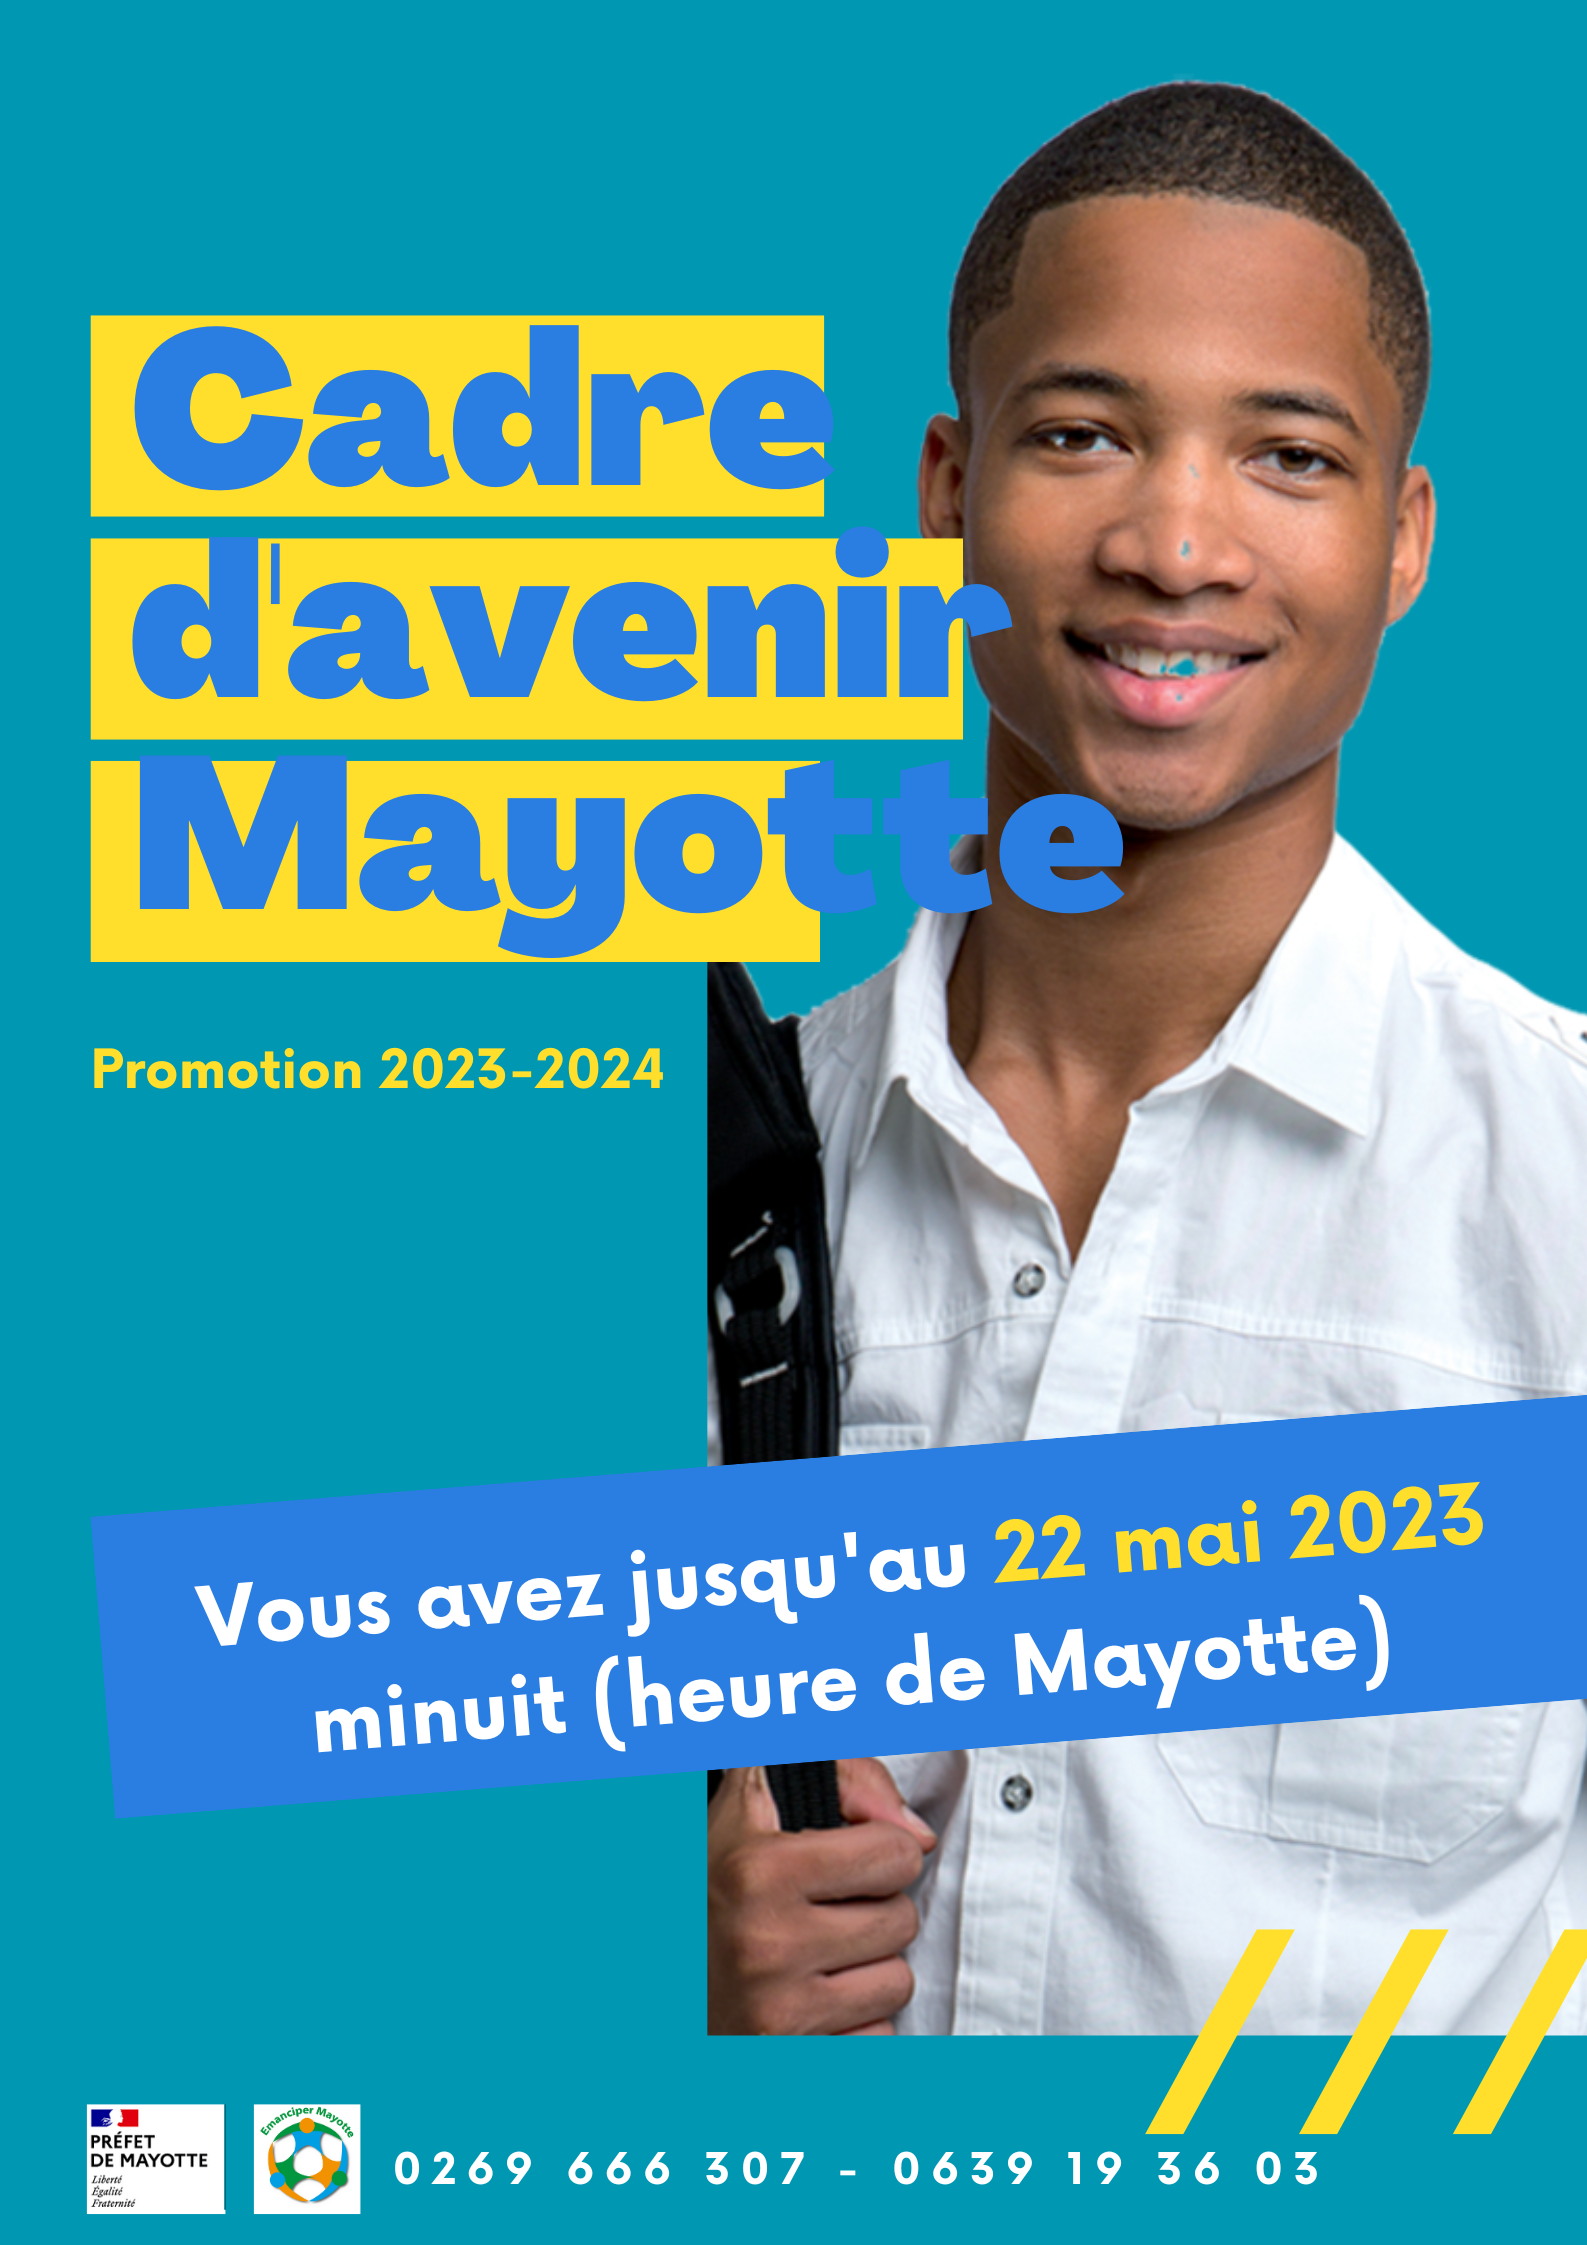 Cadre d'avenir Mayotte : Ouverture candidature pour la promotion 2023-2024